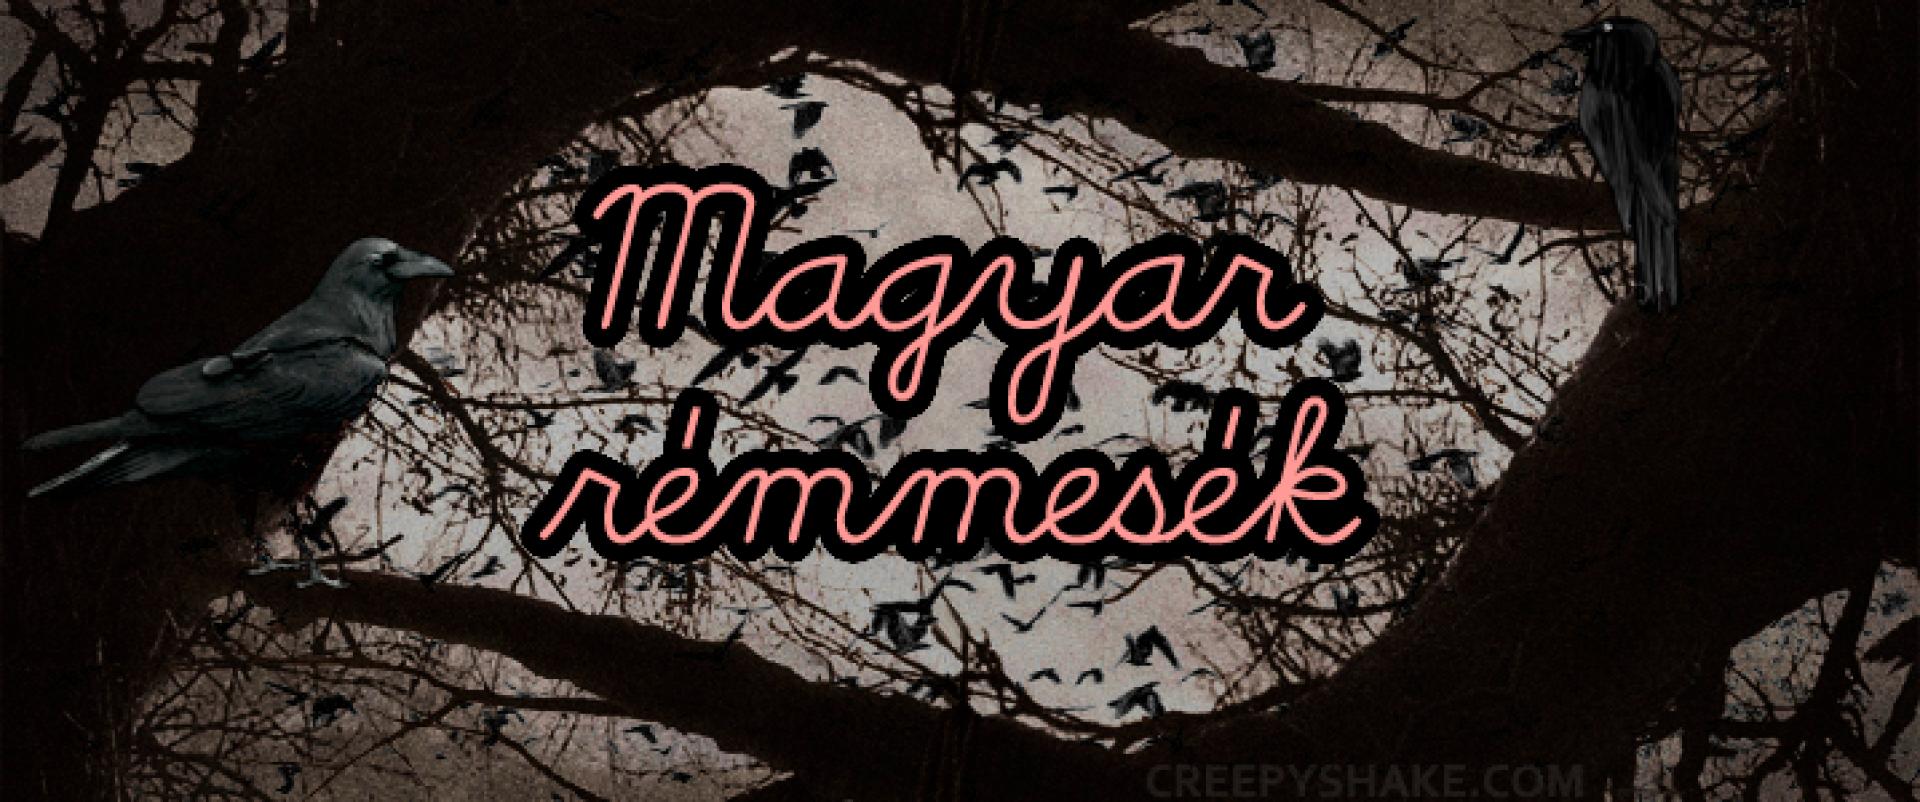 A CreepyShake bemutatja: Hungarian Horror Story - Magyar rémmesék